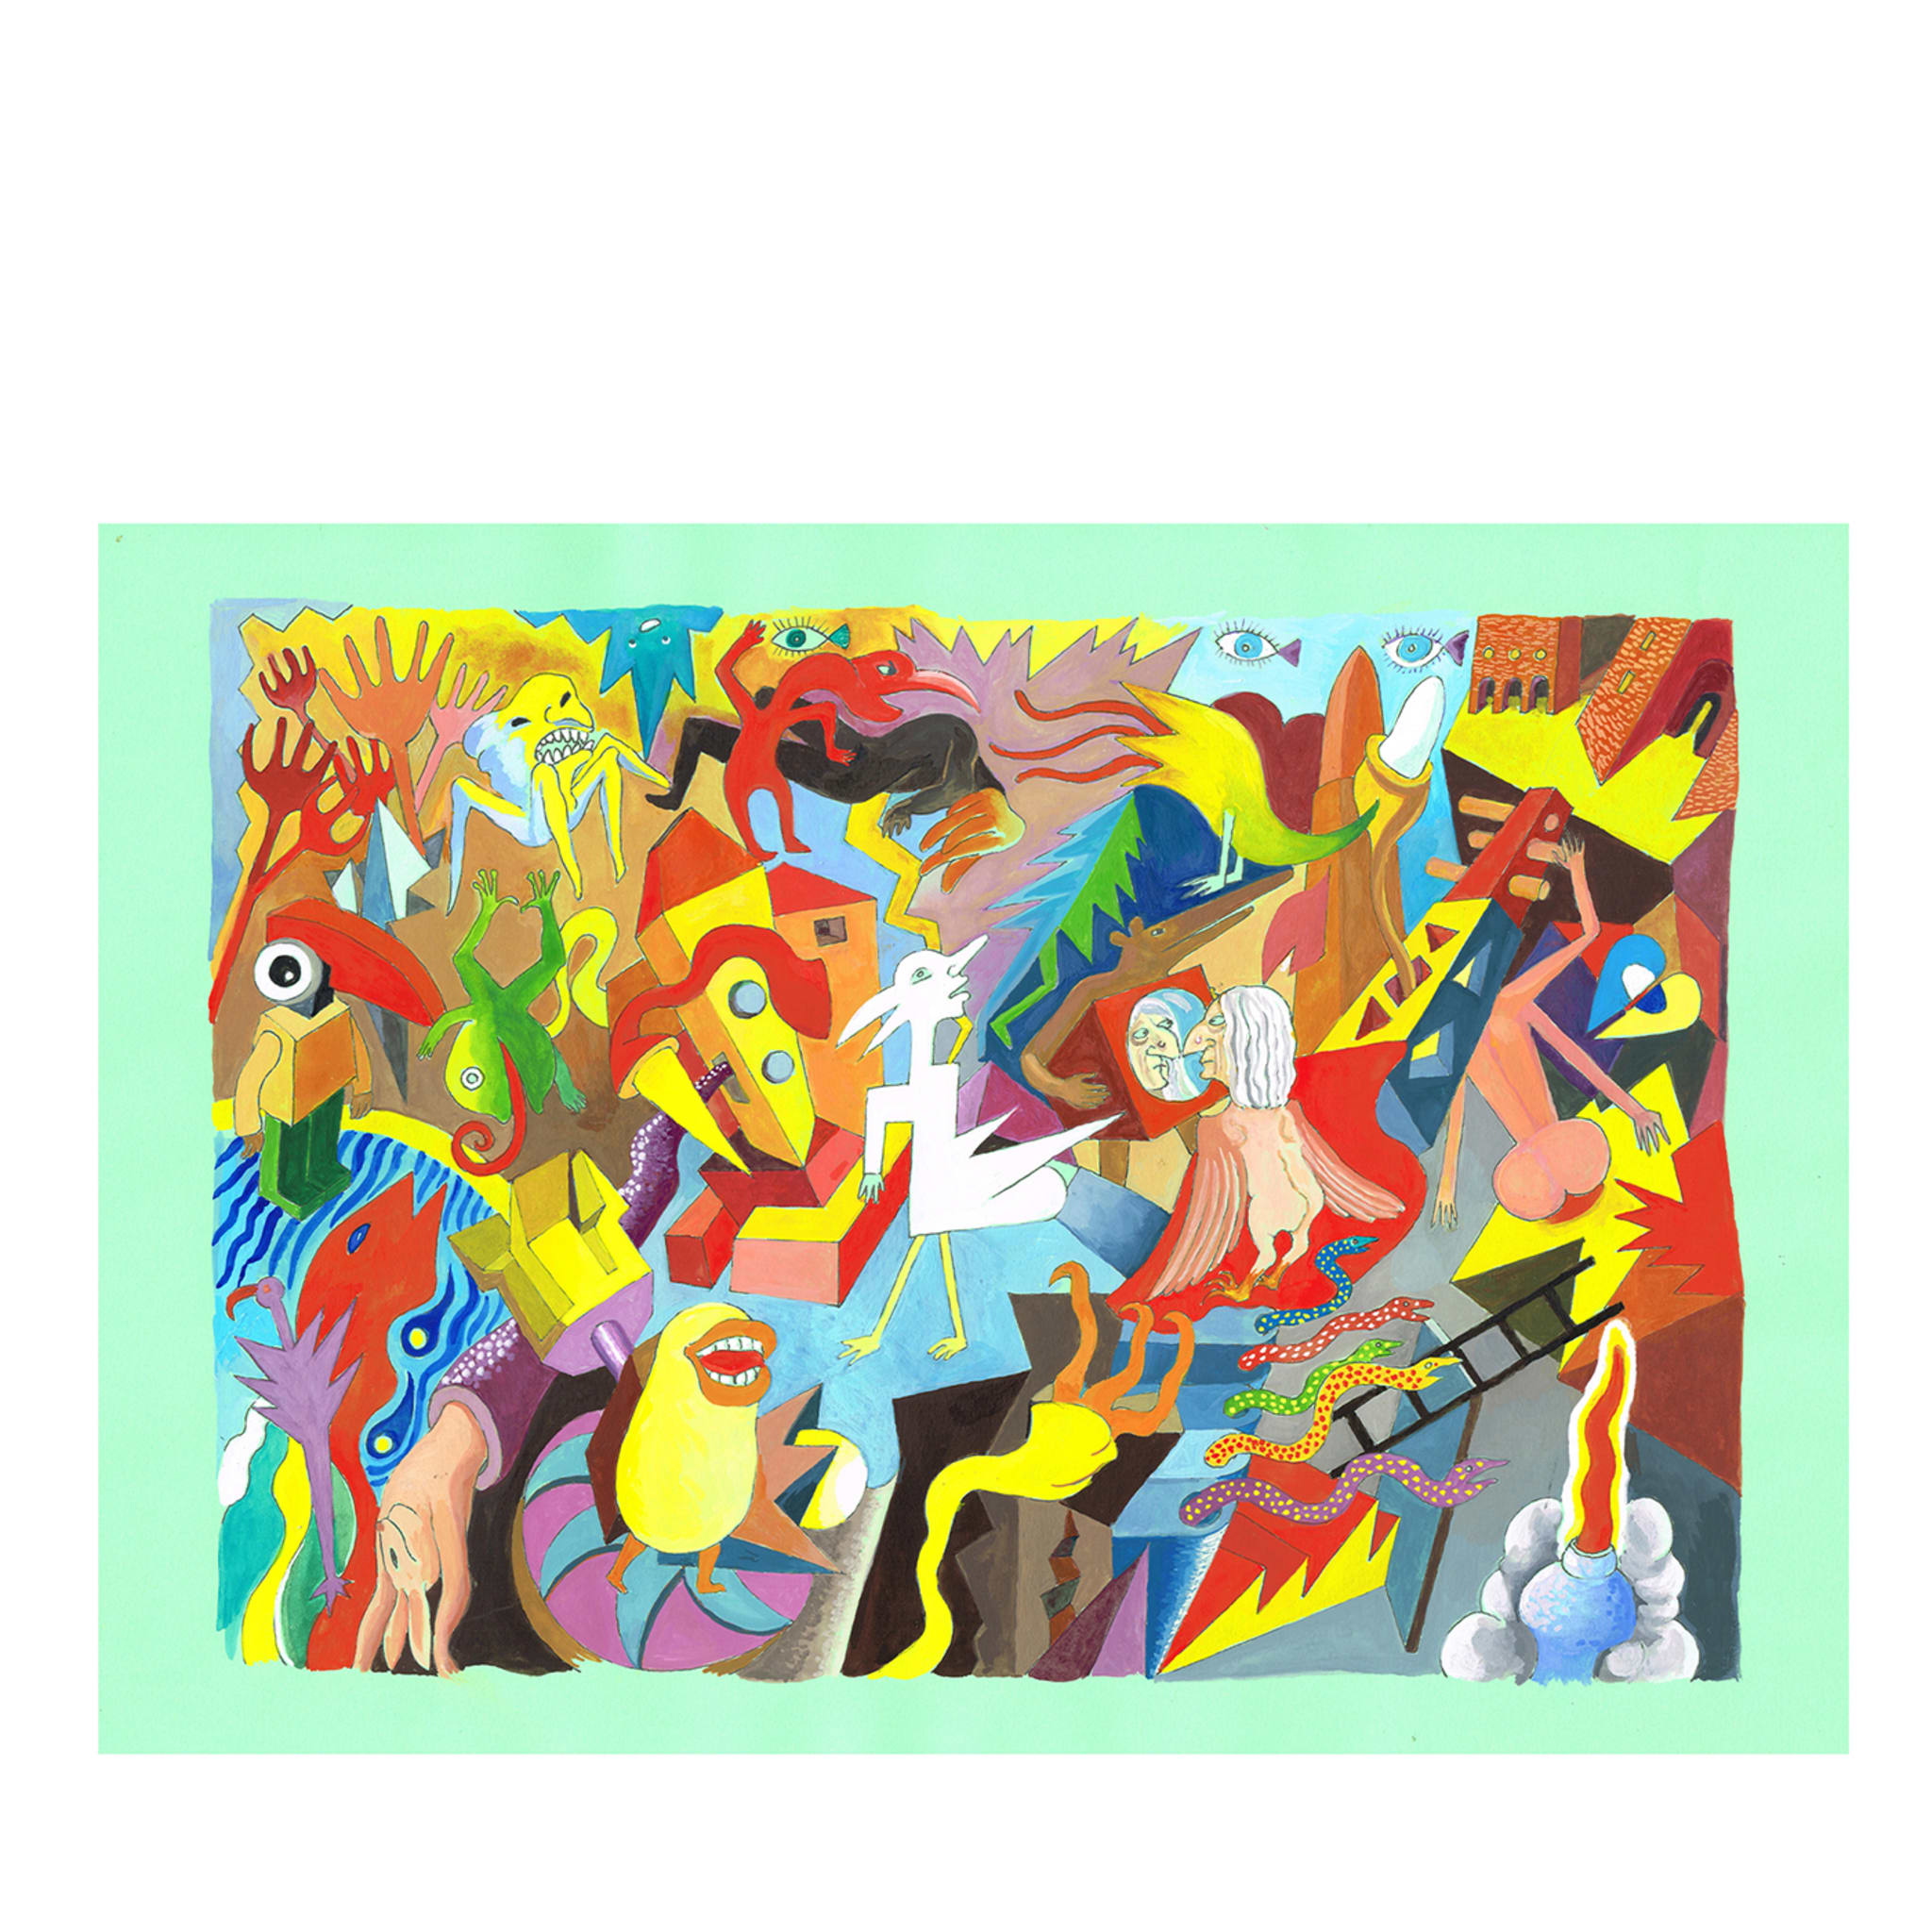 Disordinati Impeccabili - Tempera Painting on Colored Paper - Main view